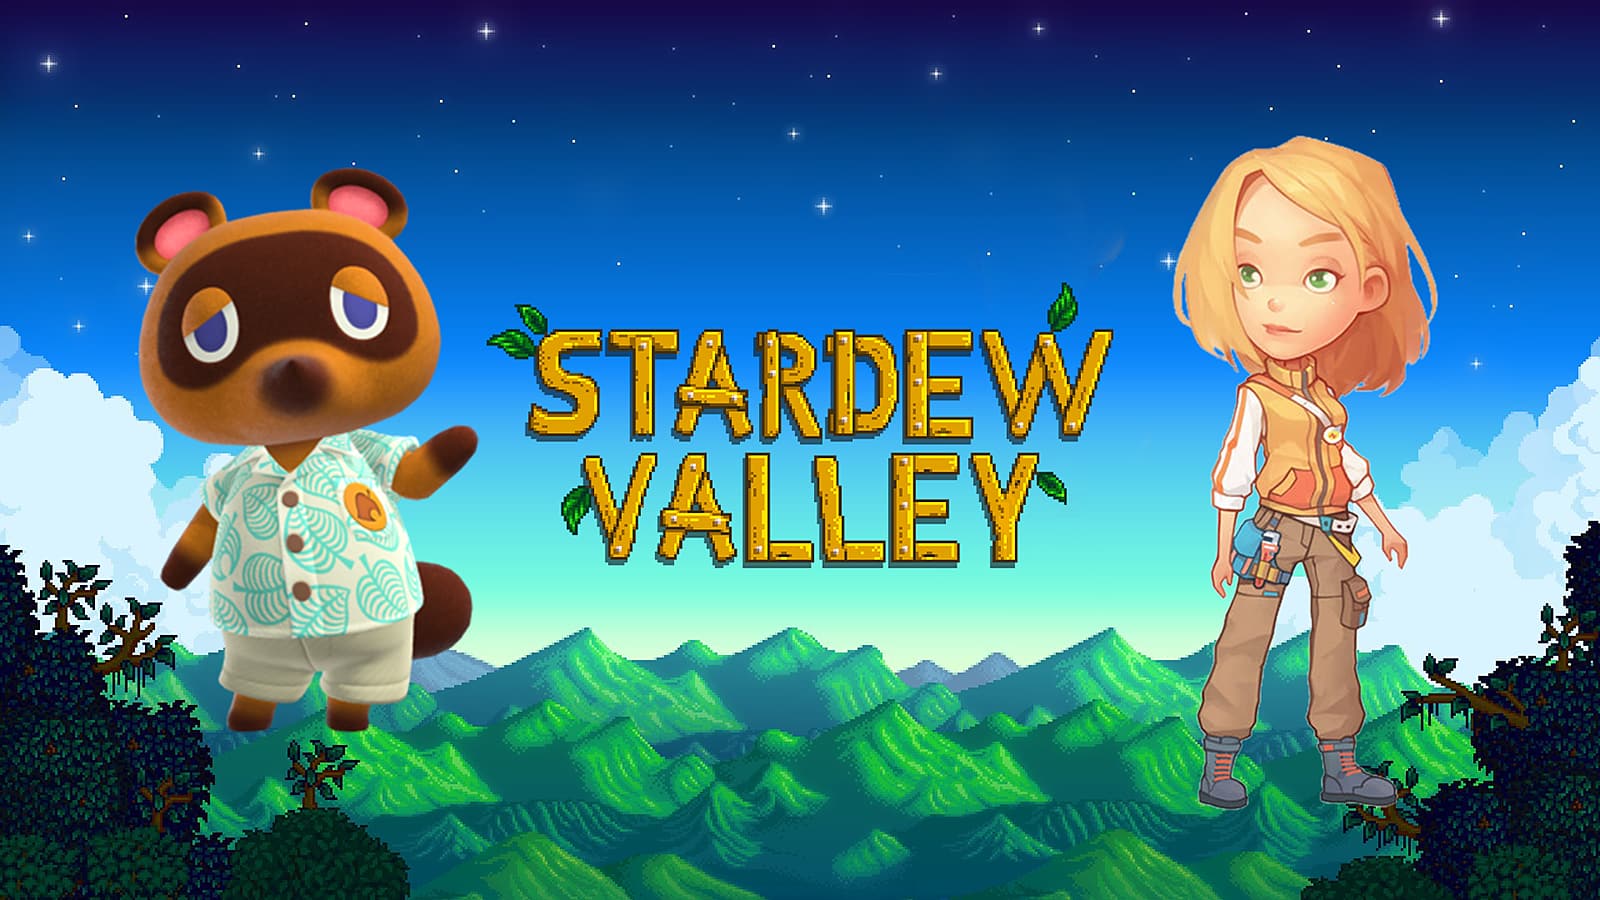 ภาพโลโก้ของ Stardew Valley พร้อมนุ๊กและเวลาของฉันในตัวละคร Portia